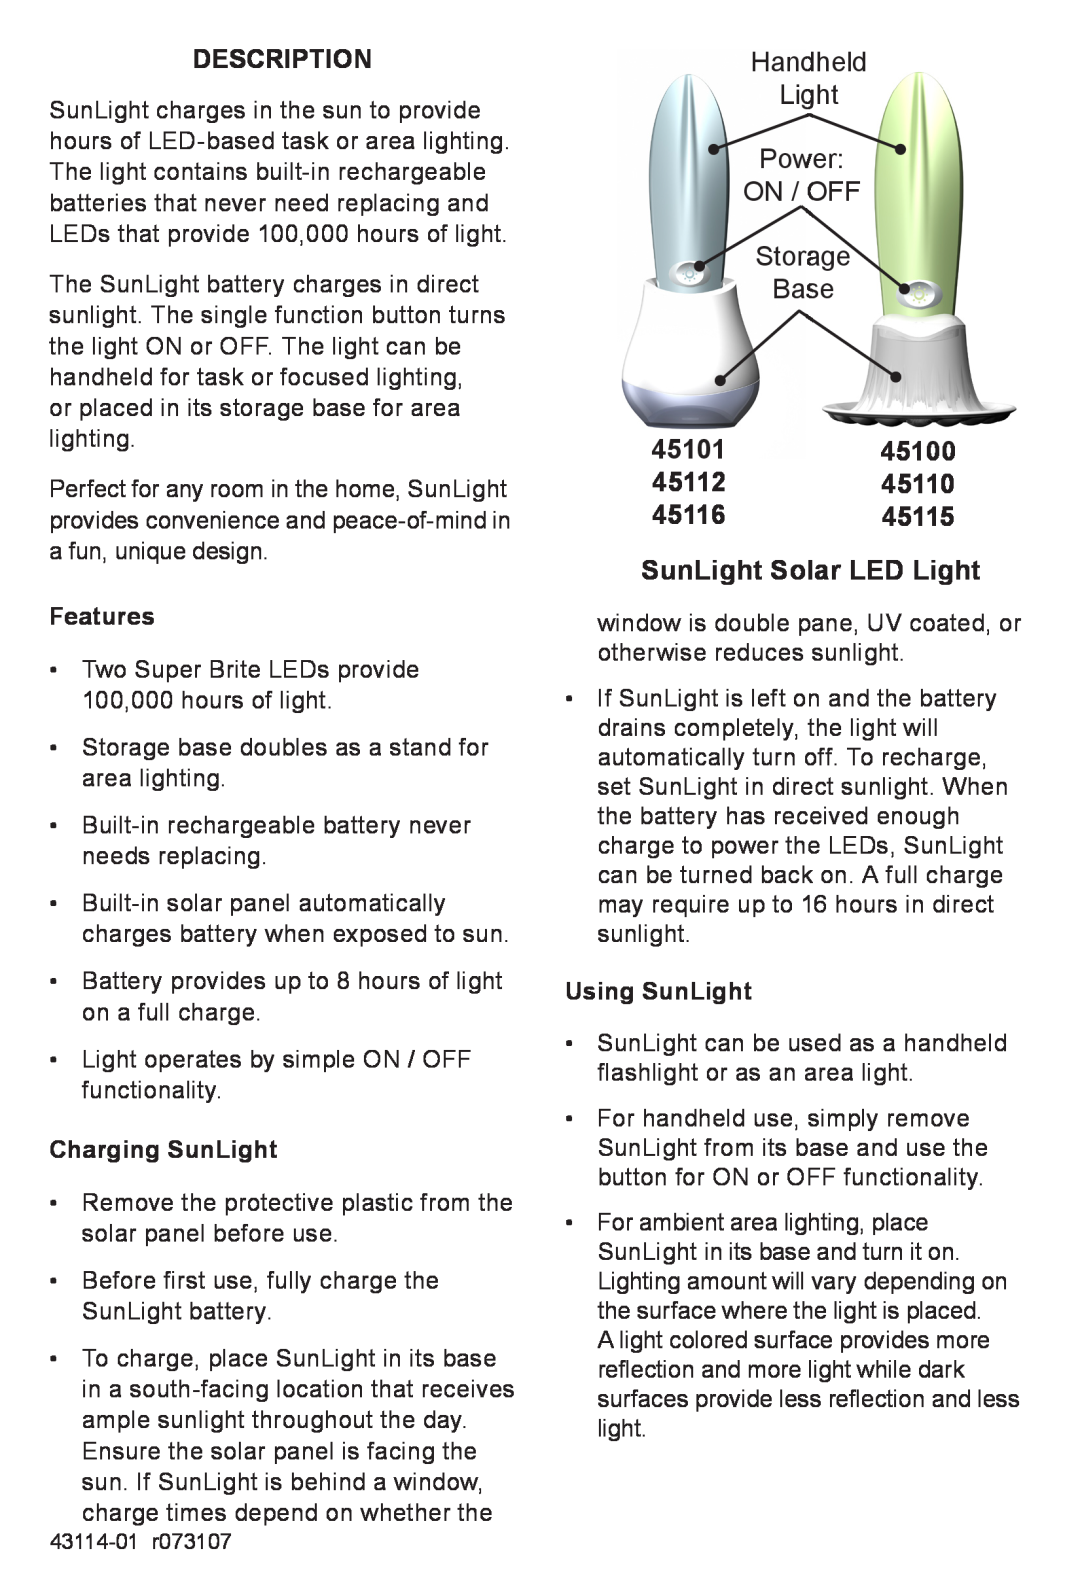 Hunter Fan Handheld Light Power ON / OFF Storage Base, Description, 45101 45112 45116 45115 SunLight Solar LED Light 